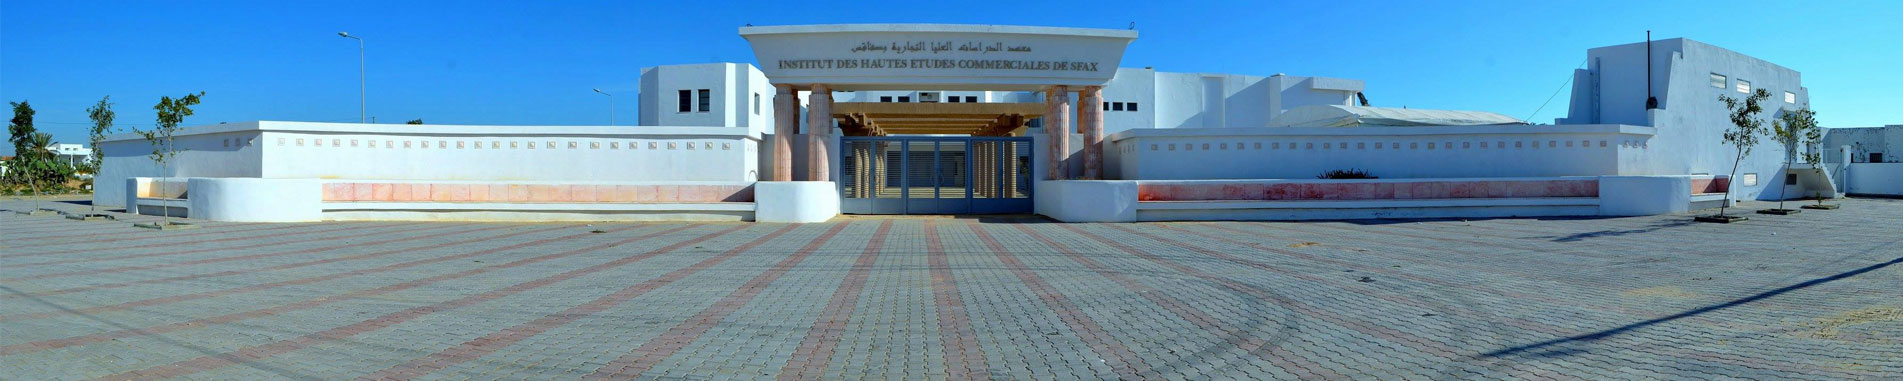 Institut des Hautes Etudes Commerciales de Sfax - IHEC Sfax